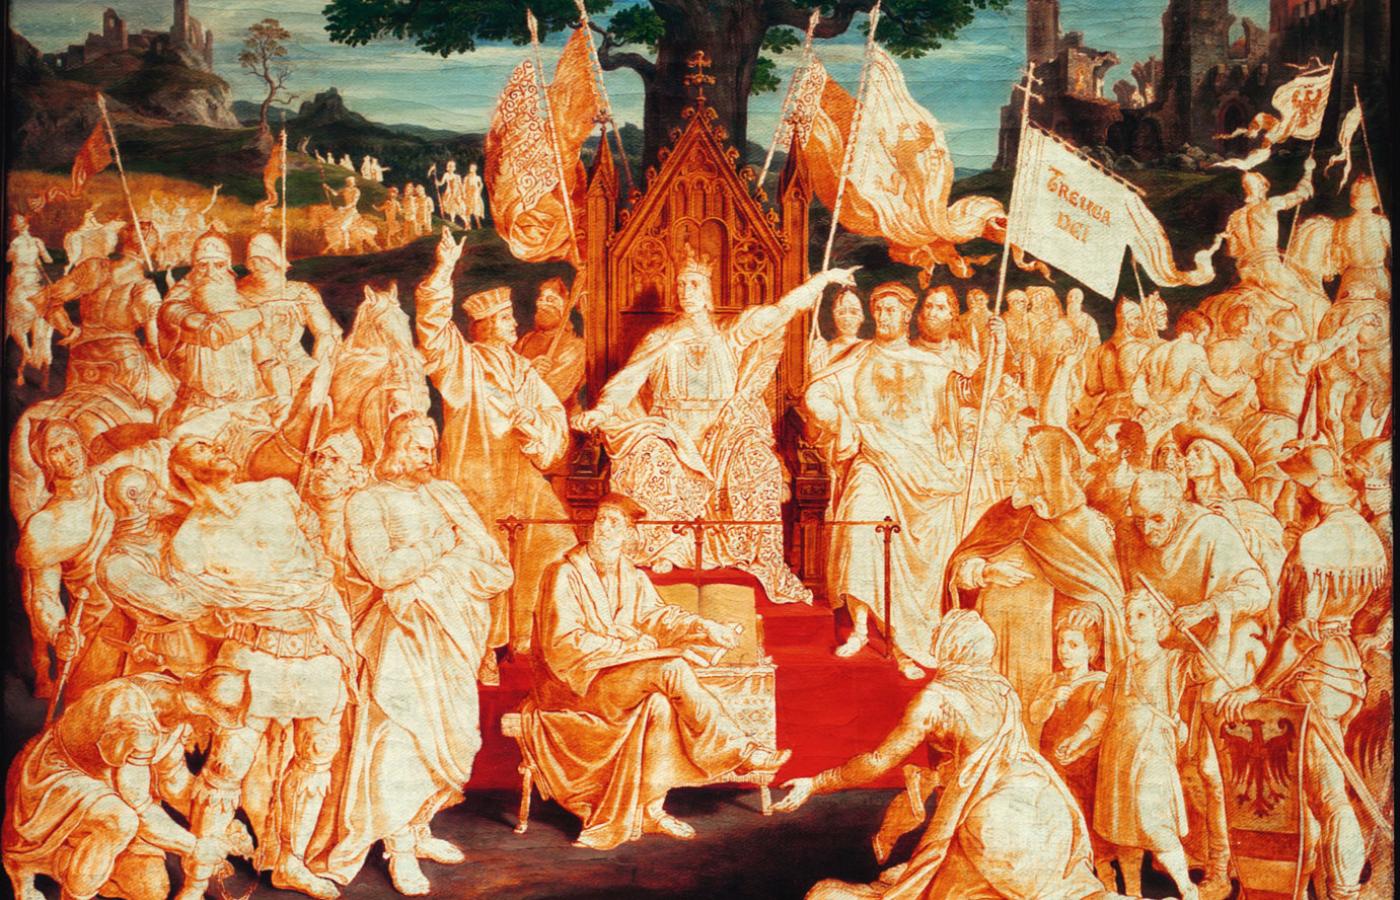 Ustanowienie pokoju ziemskiego jako sposobu zażegnania konfliktów przez króla Rudolfa Habsburga (1218–91), niedokończony obraz z XIX w.